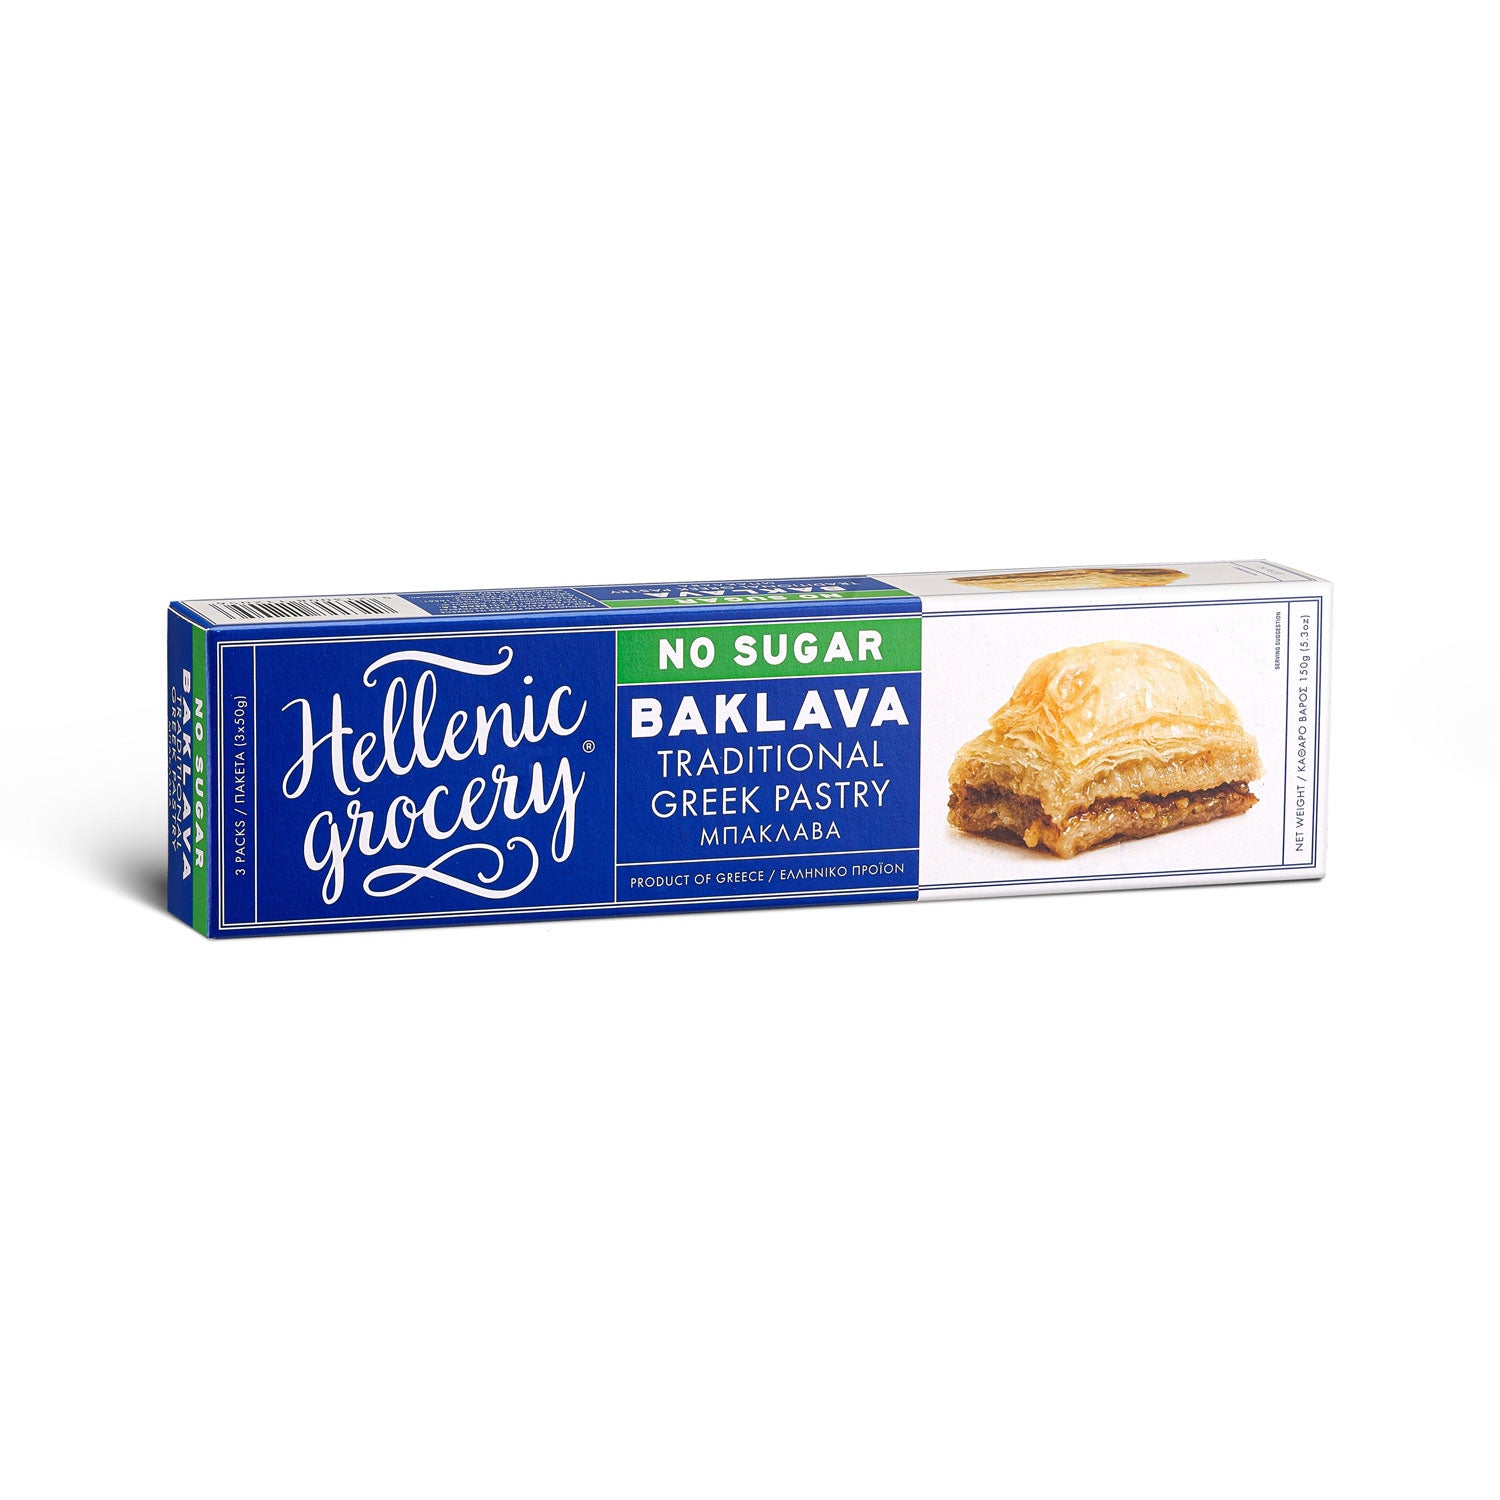 prodotti-greci-pasticceria-tradizionale-baklava-senza zucchero-180g-hellenic-grocery